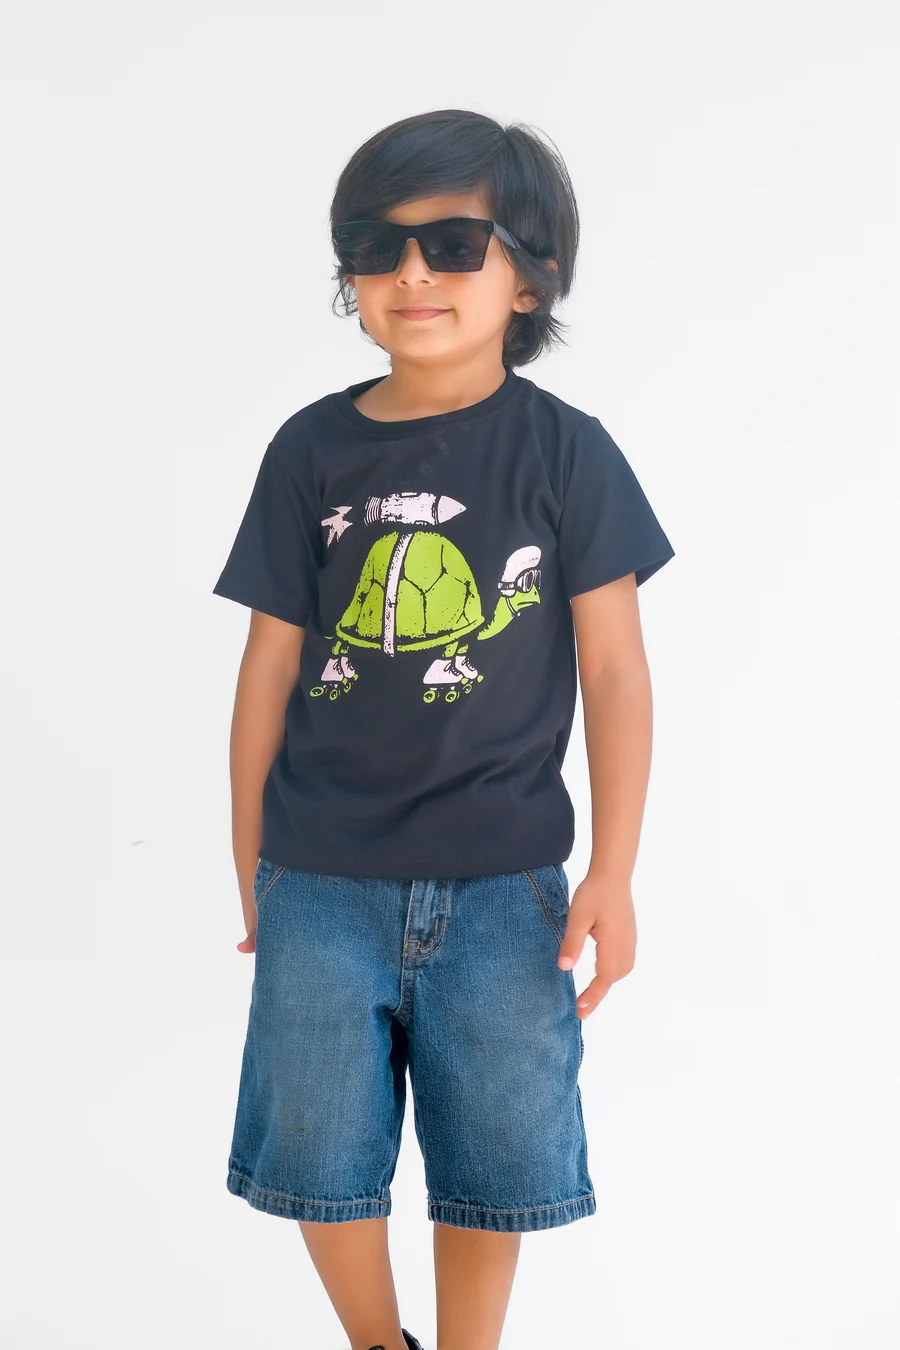 Turtle Rocket - Half Sleeves T-Shirts For Kids - Black - SBT-347